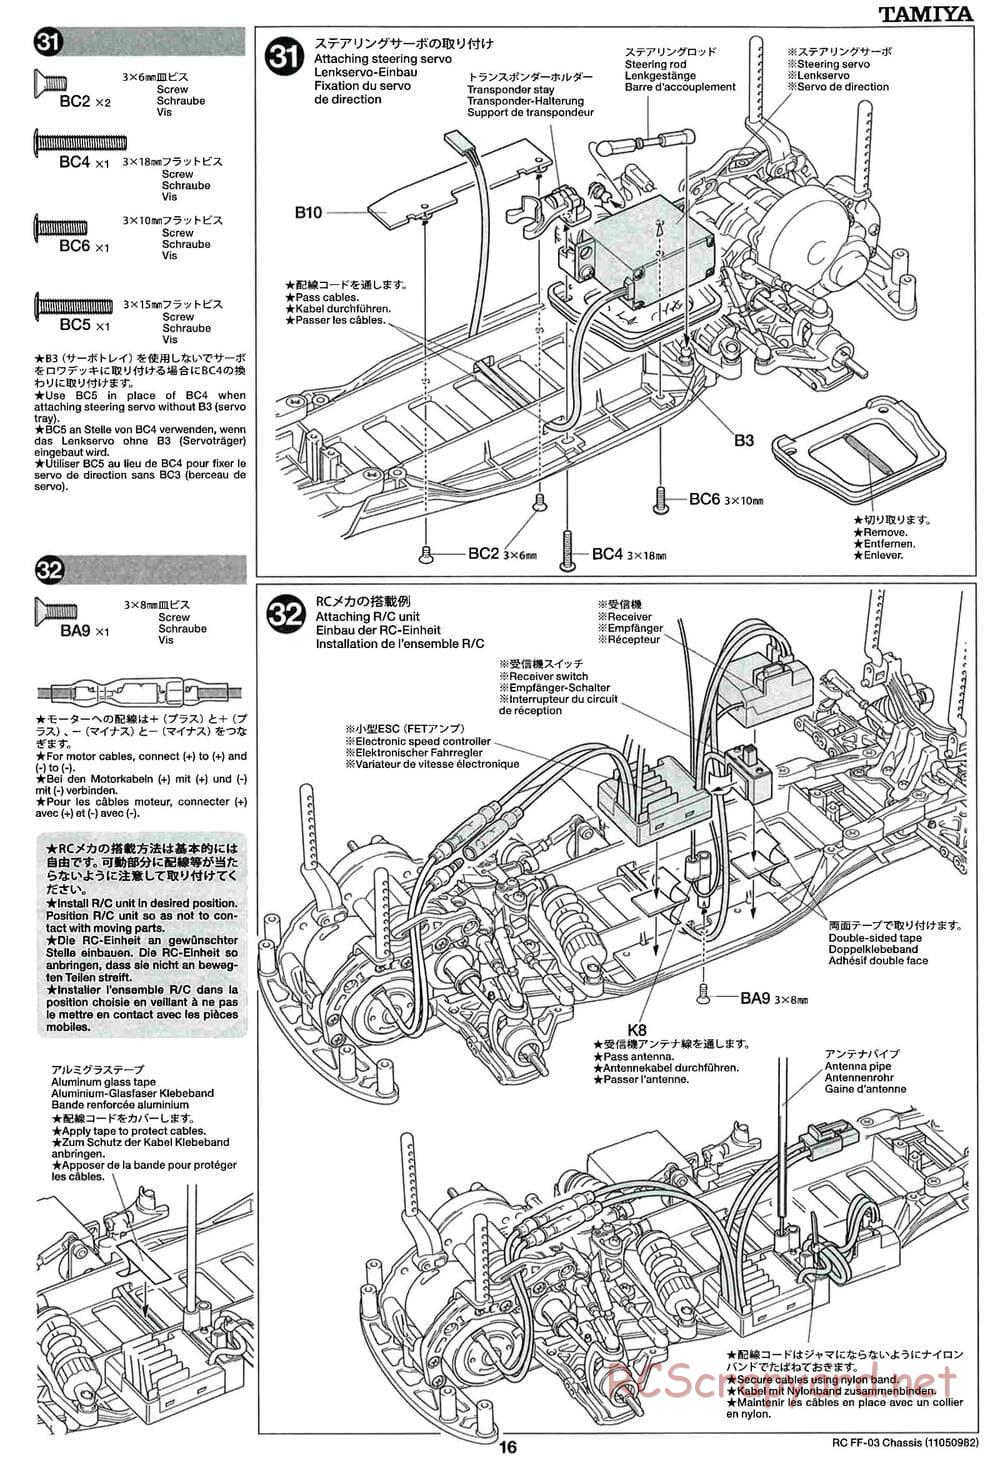 Tamiya - Honda Accord Aero Custom - FF-03 Chassis - Manual - Page 16